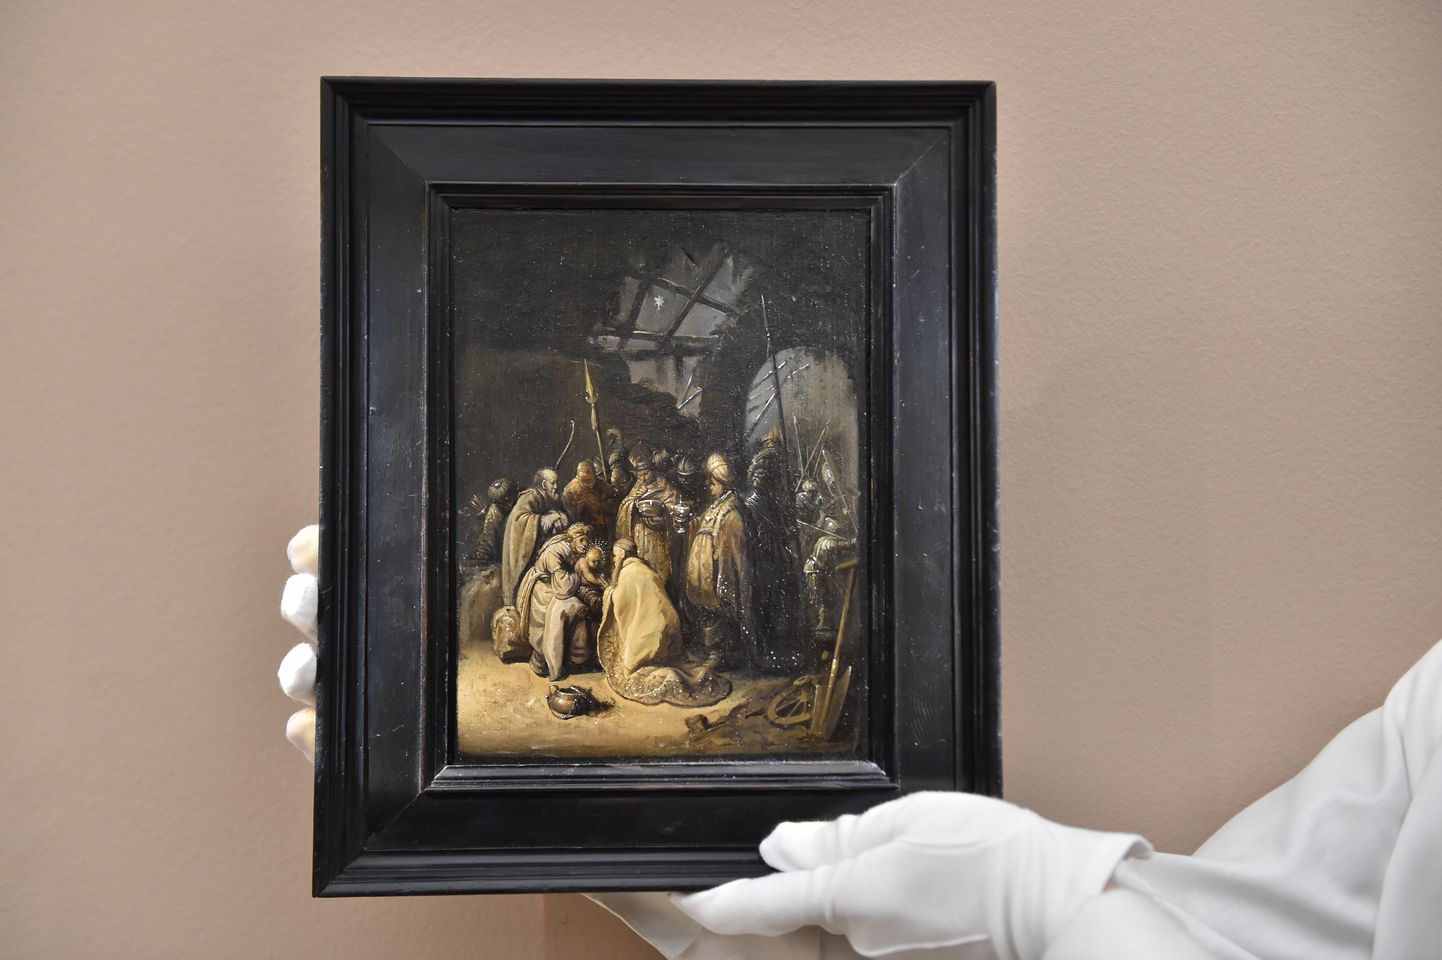 Suurbritannias Londonis Sotheby’s oksjonimaja oksjonil müüdi 6. detsembril maal «Kuningate jumaldamine» ligi 14 miljoni dollariga (13 miljonit eurot), kuna ilmnes, et tegemist on 17. sajandi Hollandi maalikunstniku Rembrandti tööga.